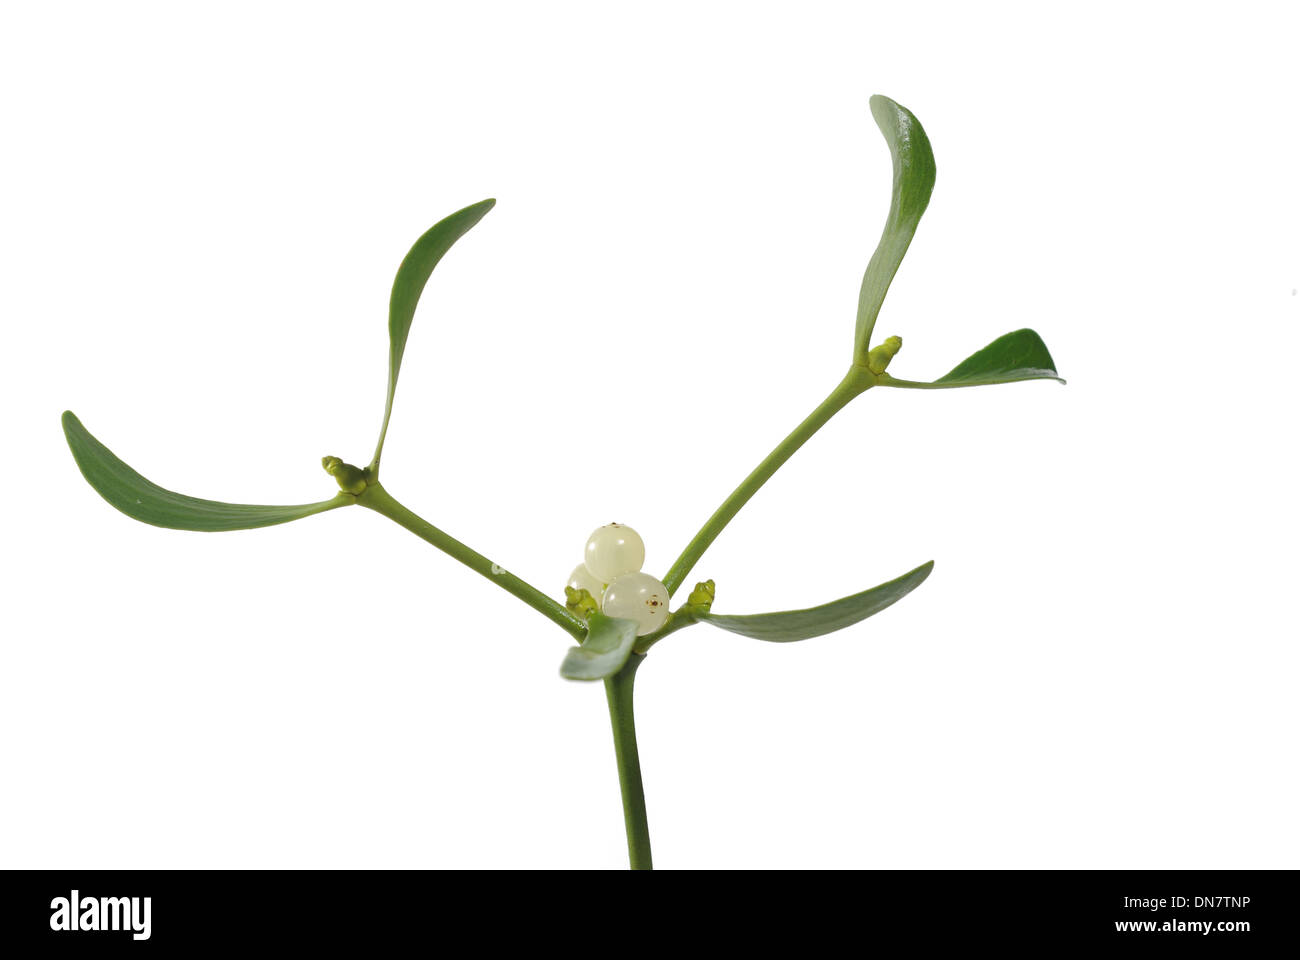 photo of mistletoe on white background Stock Photo